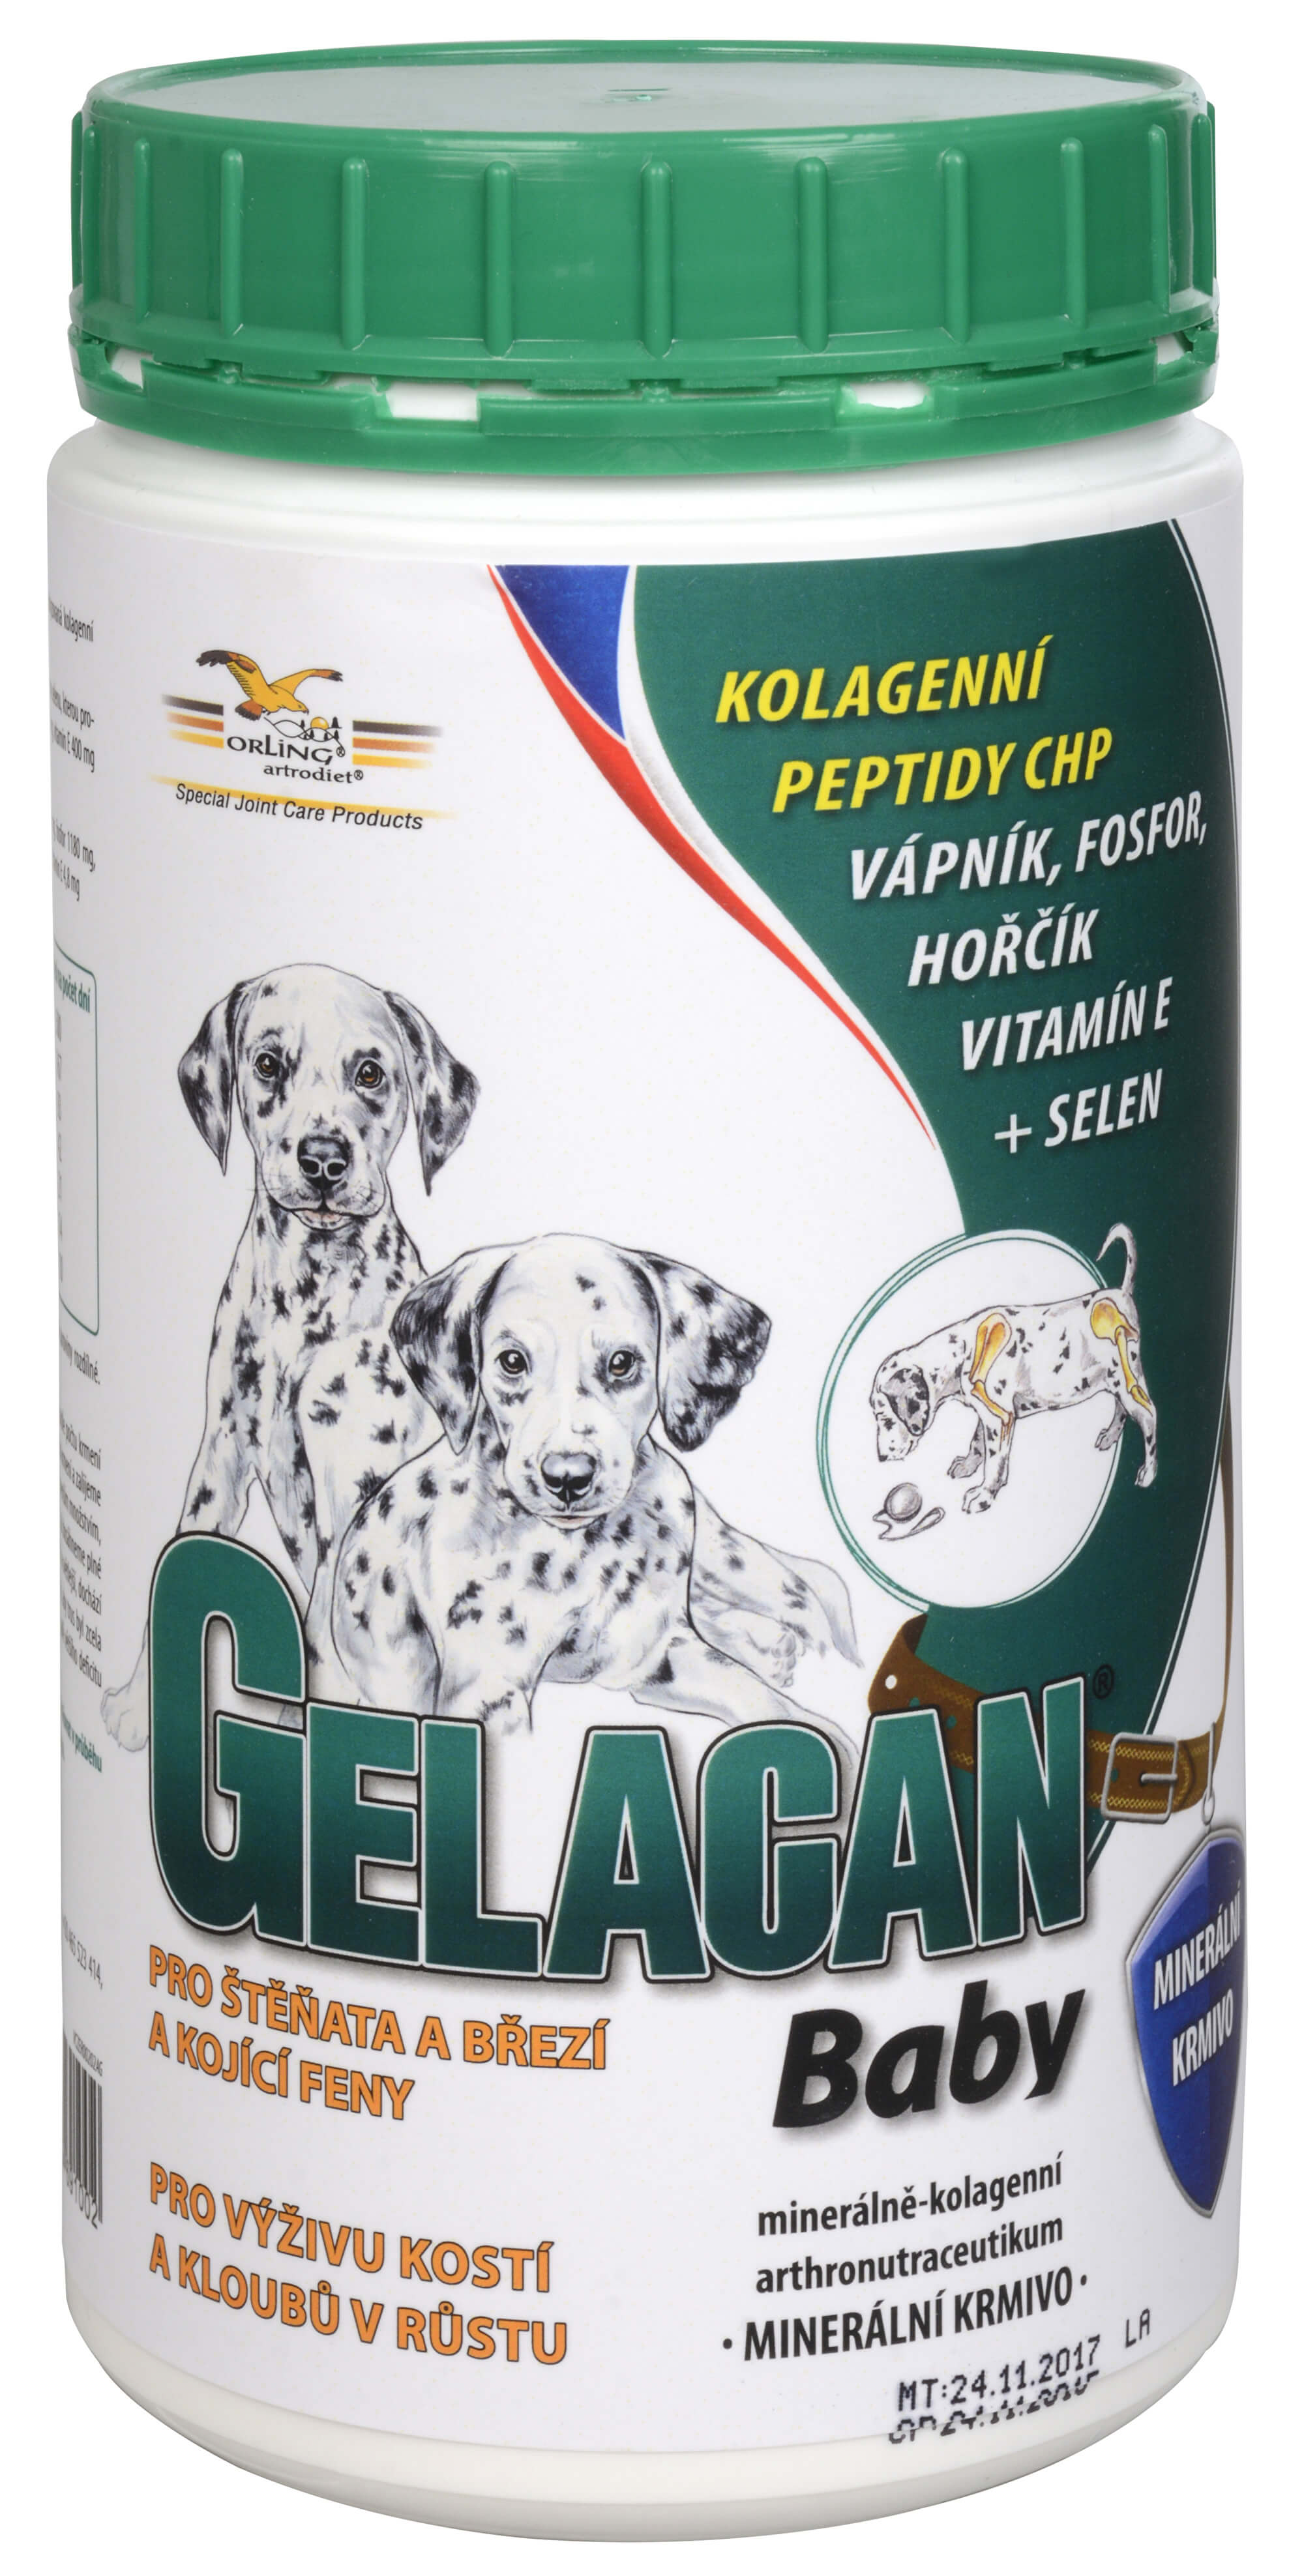 Zobrazit detail výrobku GELACAN Gelacan Baby 500 g + 2 měsíce na vrácení zboží